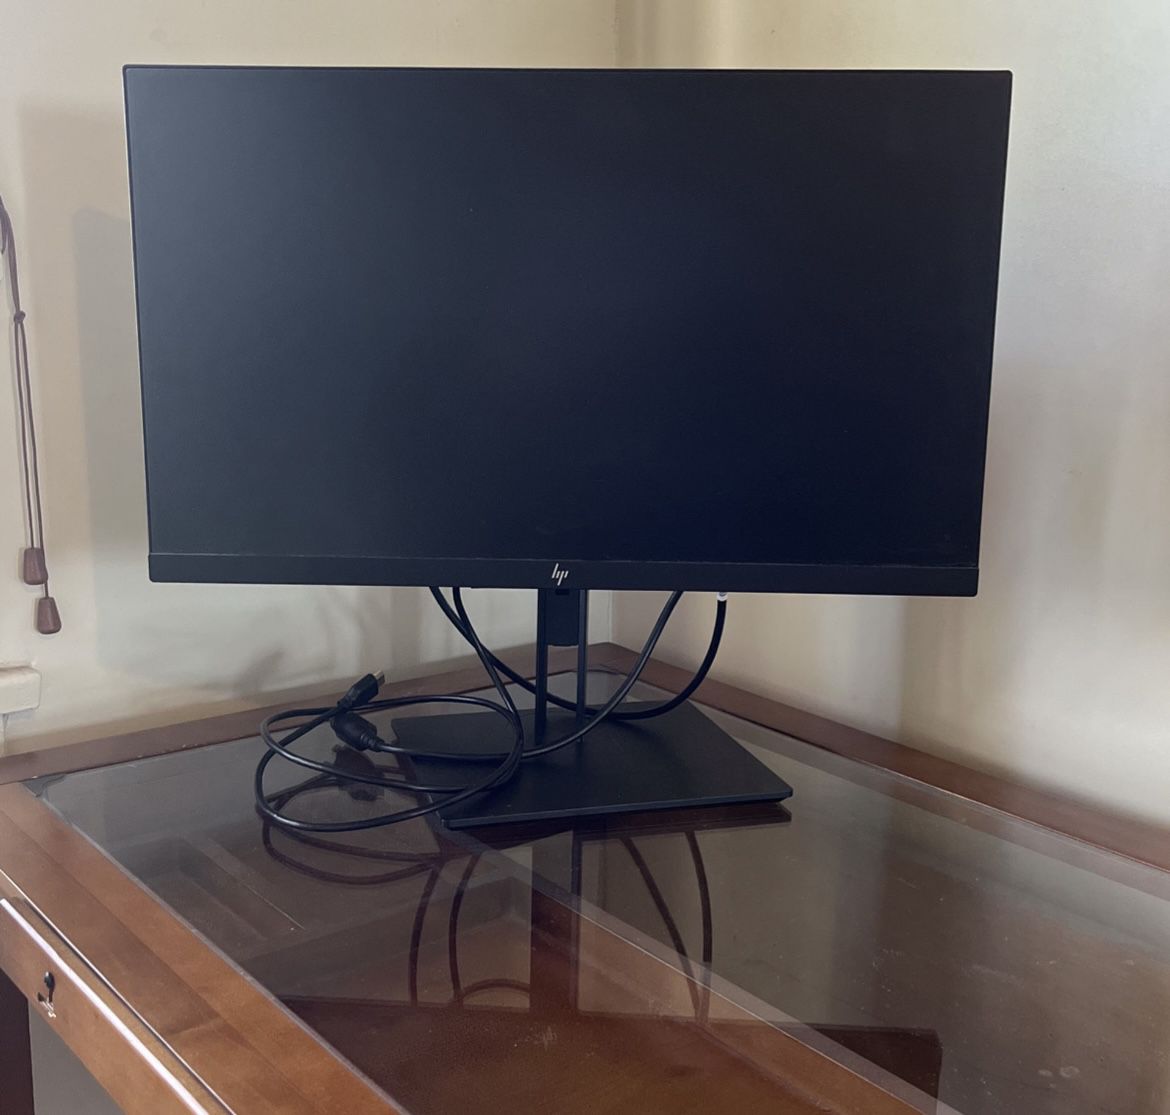 23” HP monitor w/ HDMI cord